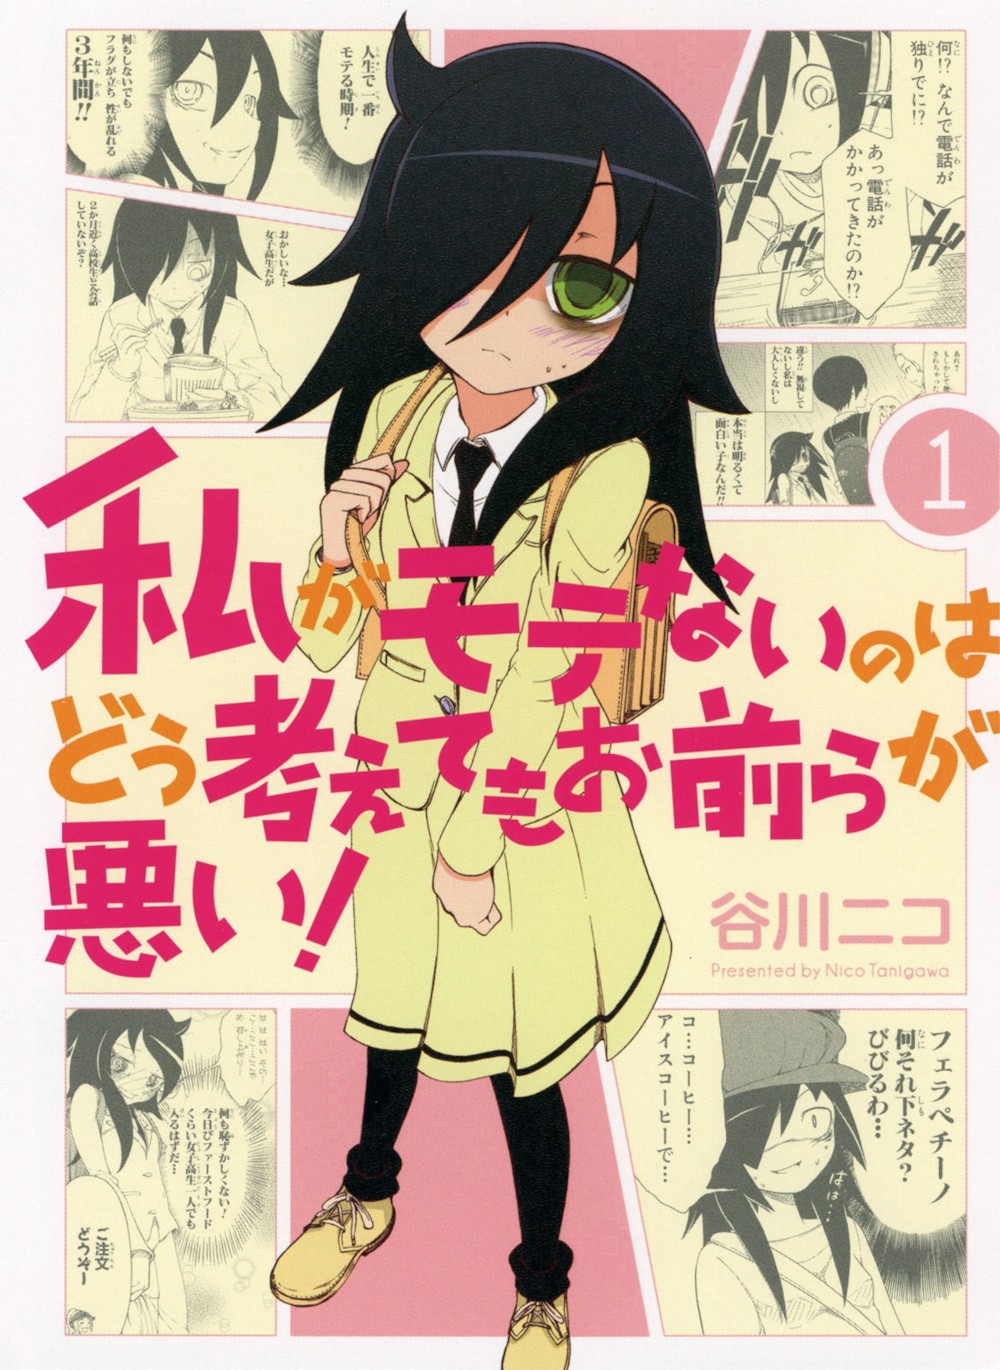 파일:WataMote_Manga_v01_cover.jpg